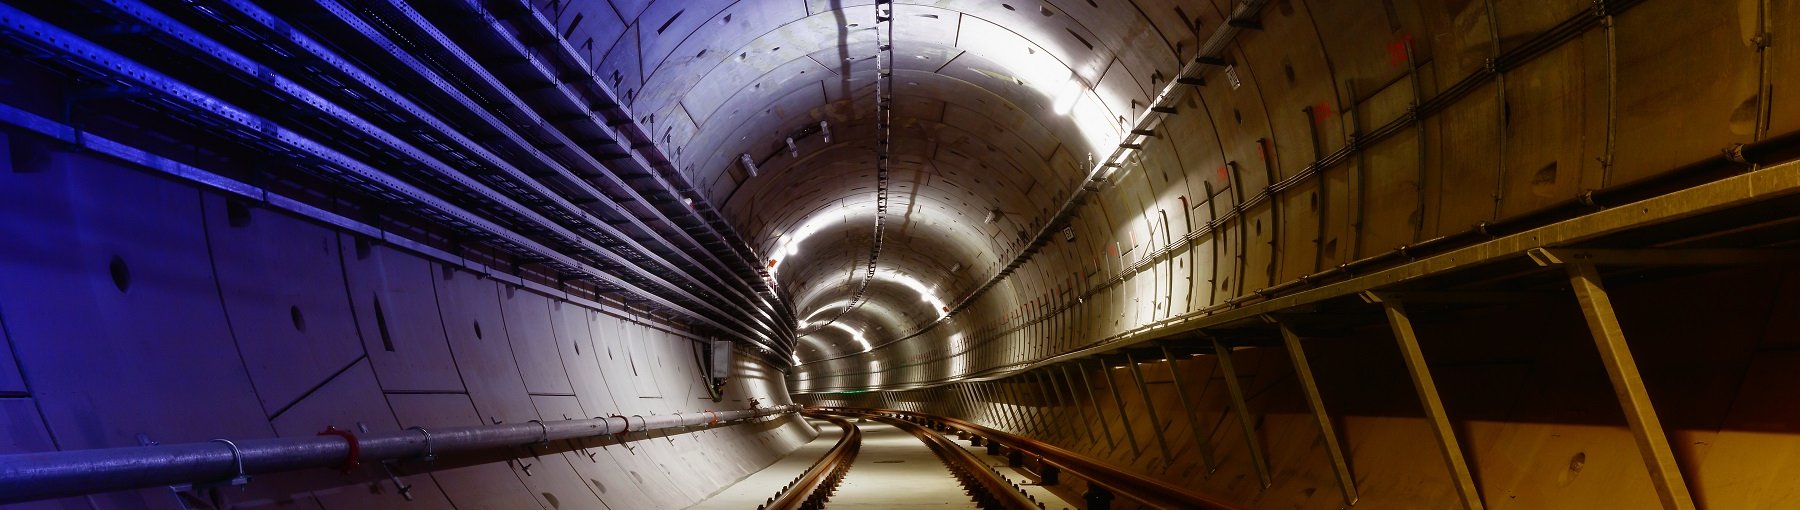 7,5 km tunelu w Łodzi: umowa jeszcze w tym roku. Fot. momente / Shutterstock